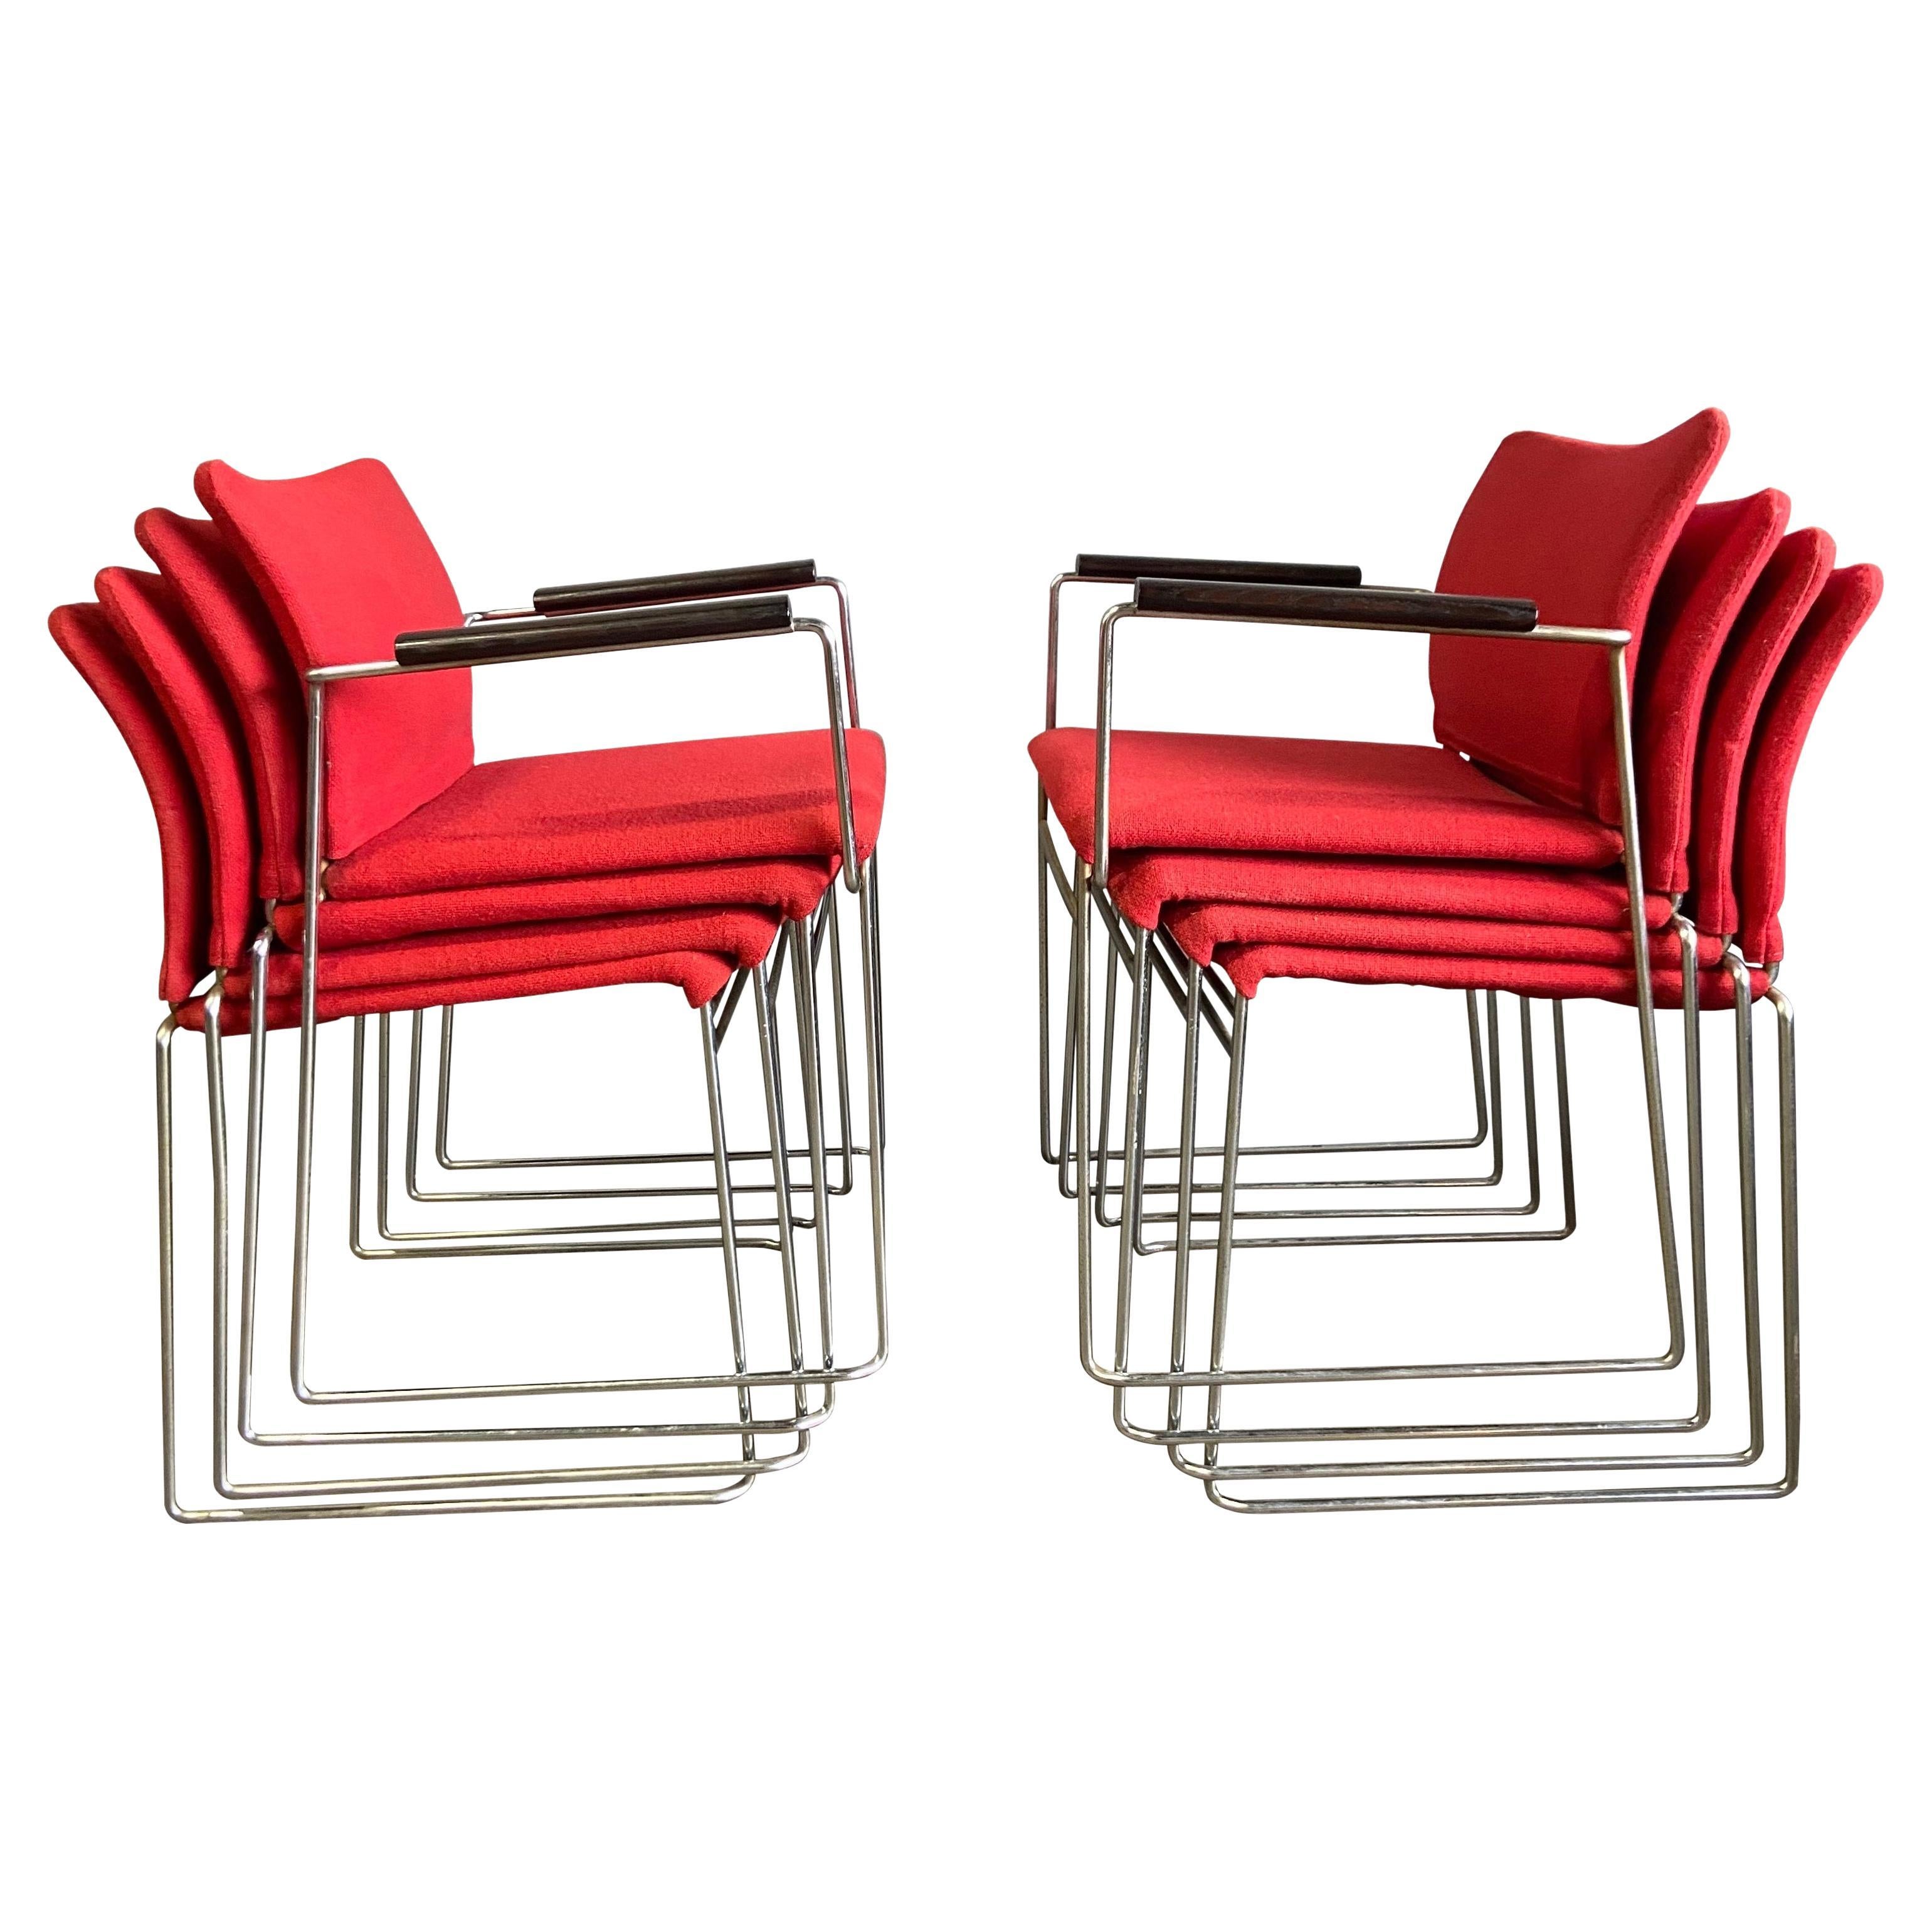 Wir stellen Ihnen diese wunderbaren Jano-Stühle vor, die von Kazuhide Takahama entworfen wurden. Mit Originalpolsterung auf Chromstahlrahmen. Diese sind original und wurden von Simon Gavina und jetzt Cassina produziert. Passt perfekt in jedes